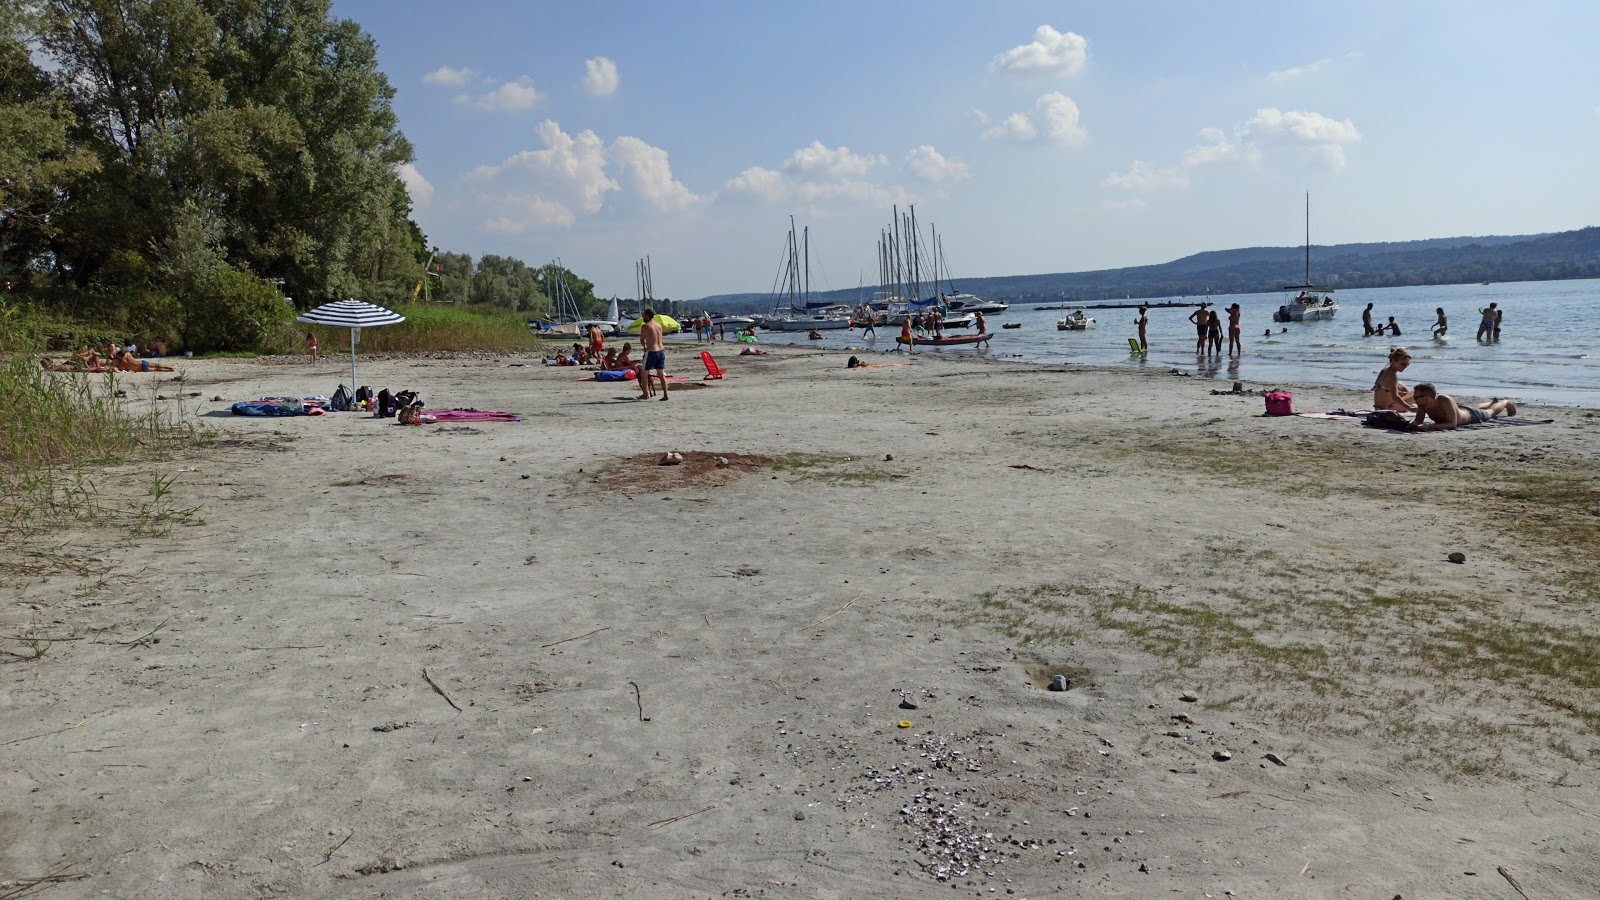 Foto av Spiaggia dei Pobi med turkos rent vatten yta